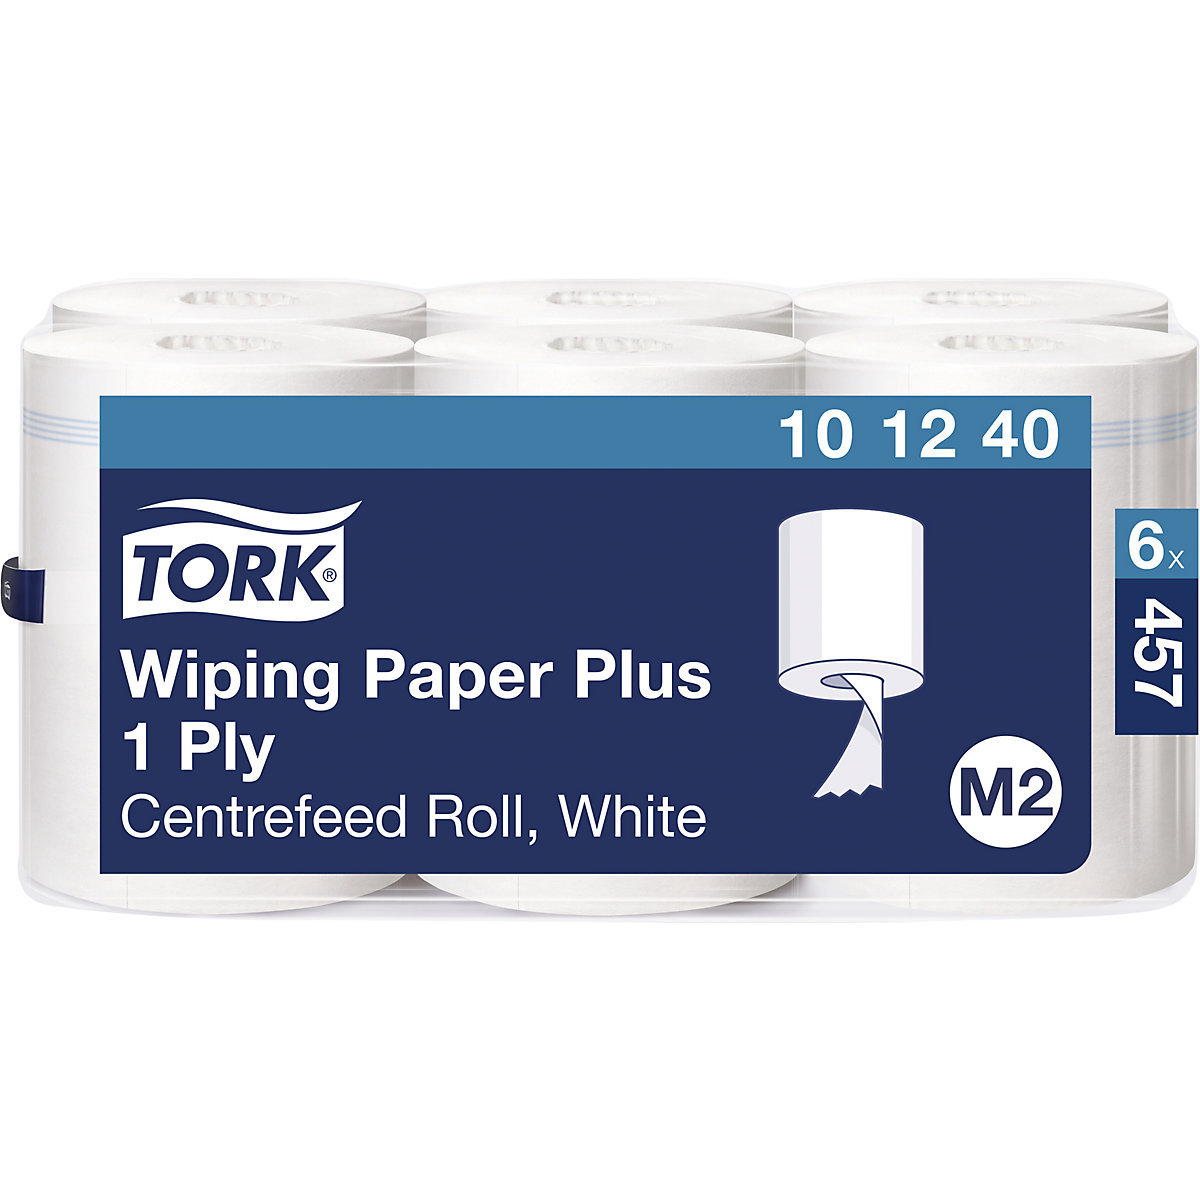 Mocne, uniwersalne ściereczki papierowe, centralne dozowanie – TORK (Zdjęcie produktu 2)-1